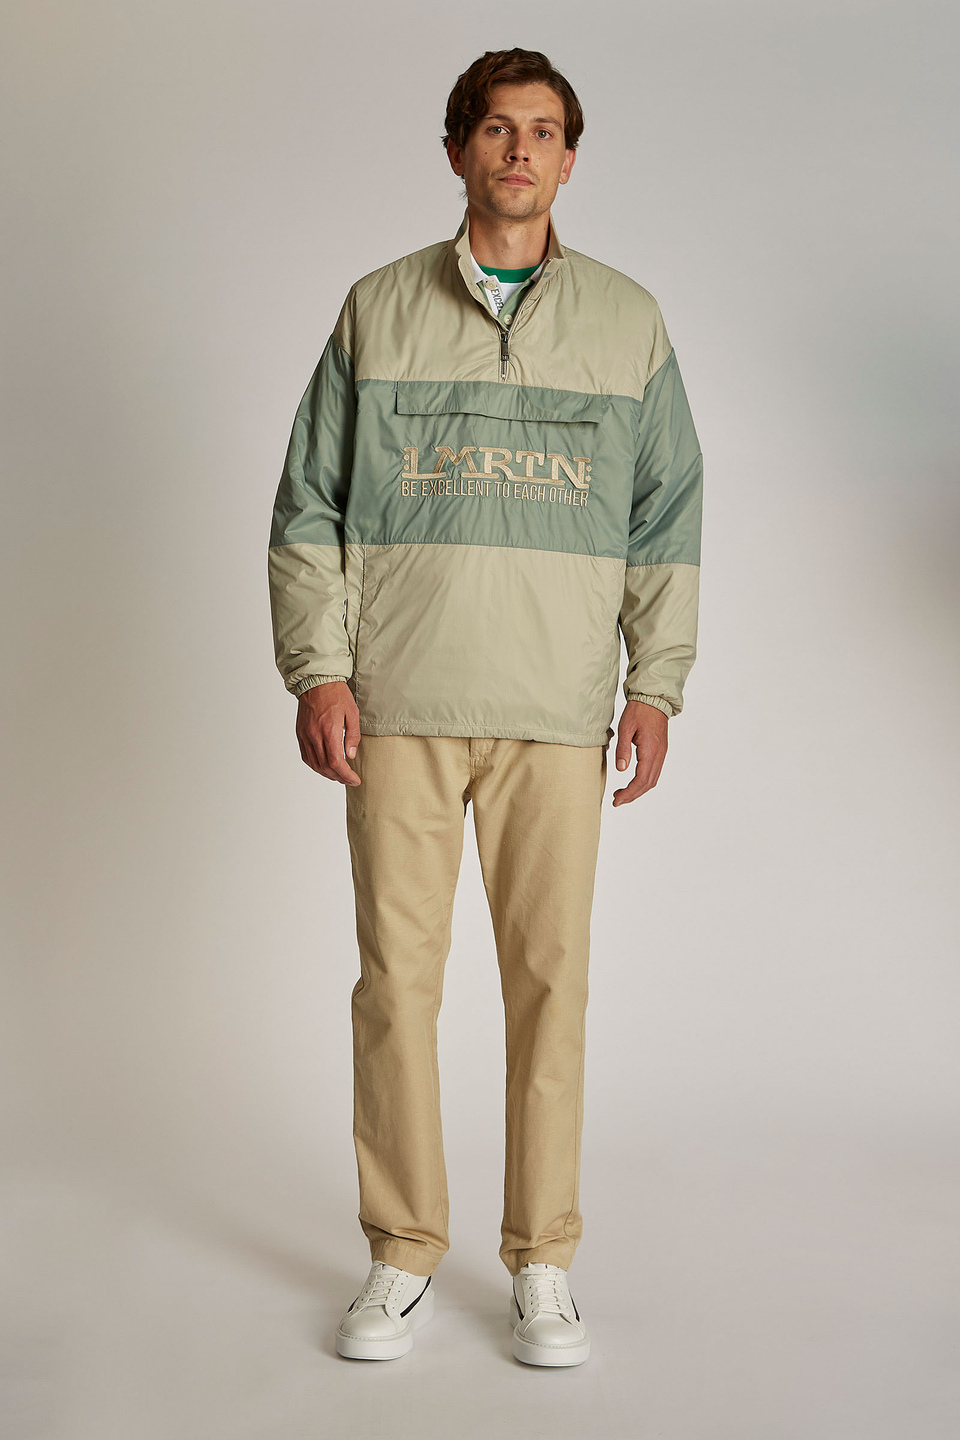 Herren-Sweatshirt aus technischem Gewebe, oversized Modell mit Band auf der Vorderseite | La Martina - Official Online Shop